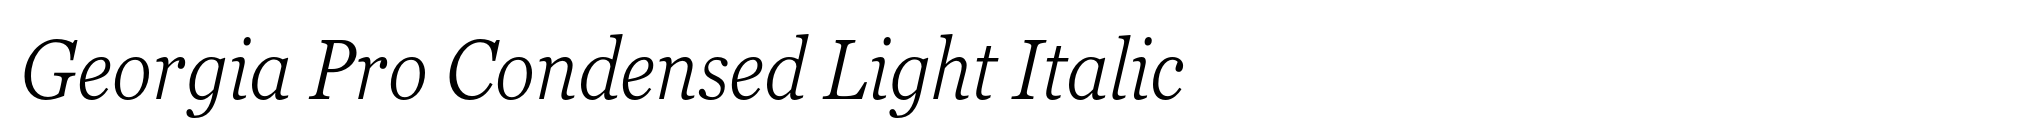 Georgia Pro Condensed Light Italic image